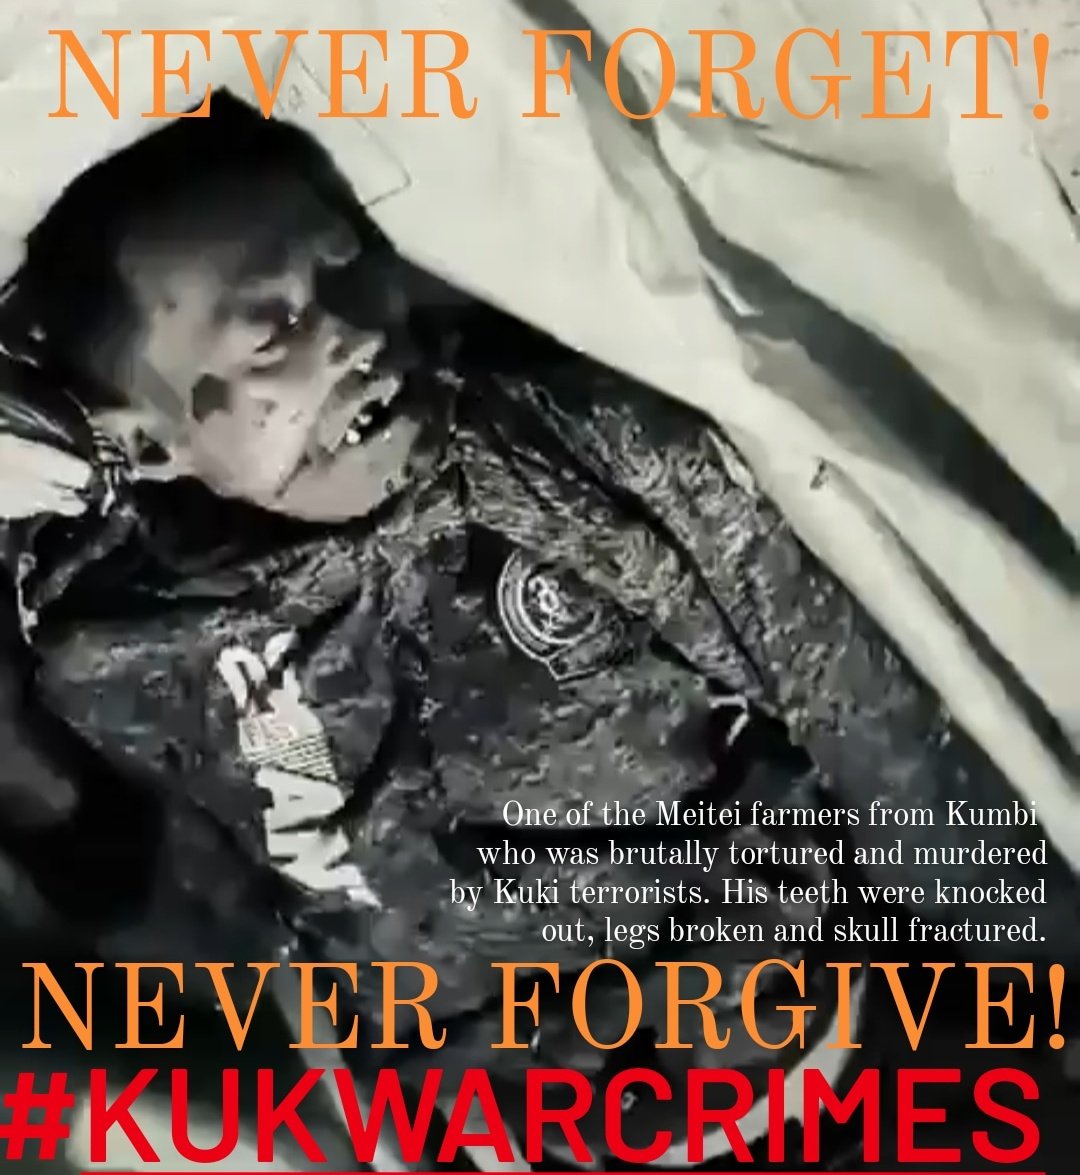 NEVER FORGET. NEVER FORGIVE.

#KukiWarCrimes 
#KukiAtrocities